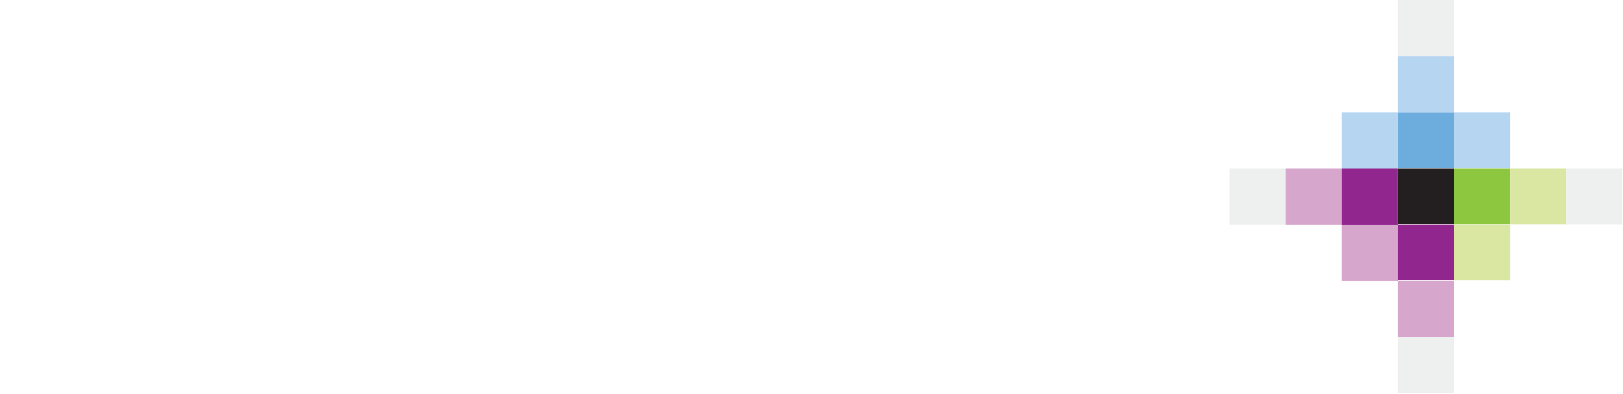 Volaris
 logo grand pour les fonds sombres (PNG transparent)